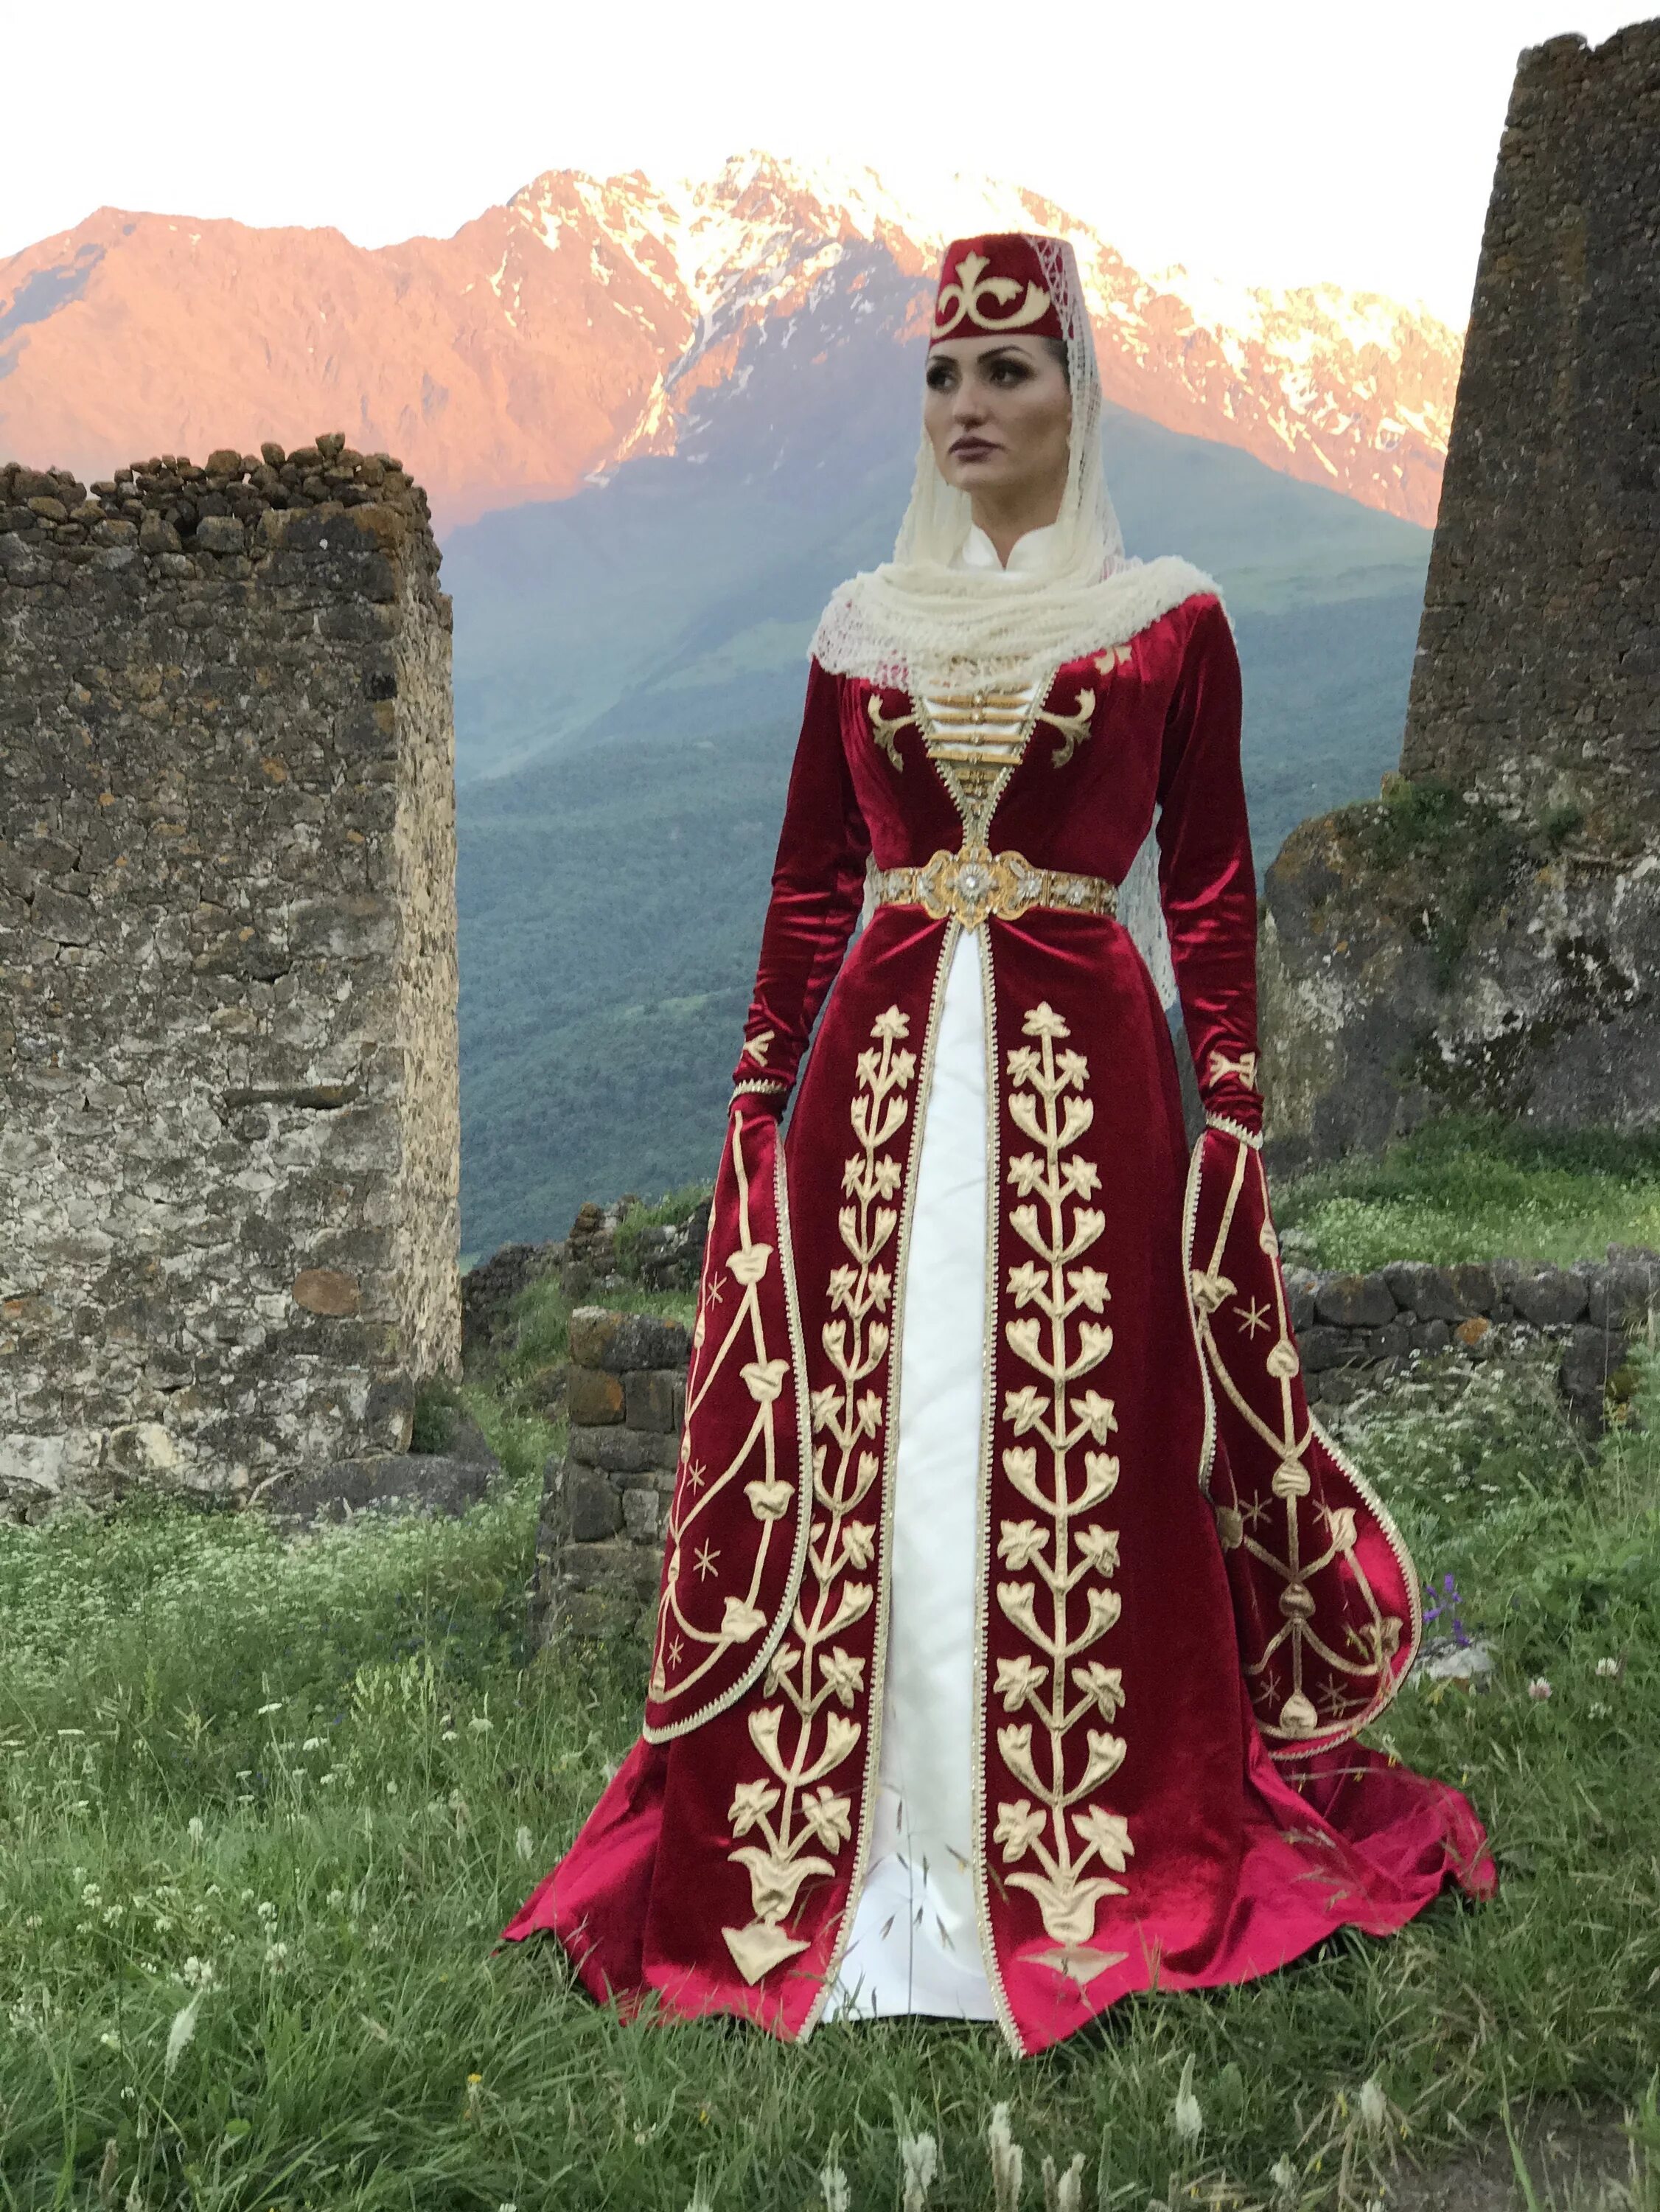 Одежда осетин. Национальный костюм карачаевцев. Нац костюм Северной Осетии. Национальное платье карачаевцев. Северная Осетия Алания национальный костюм.